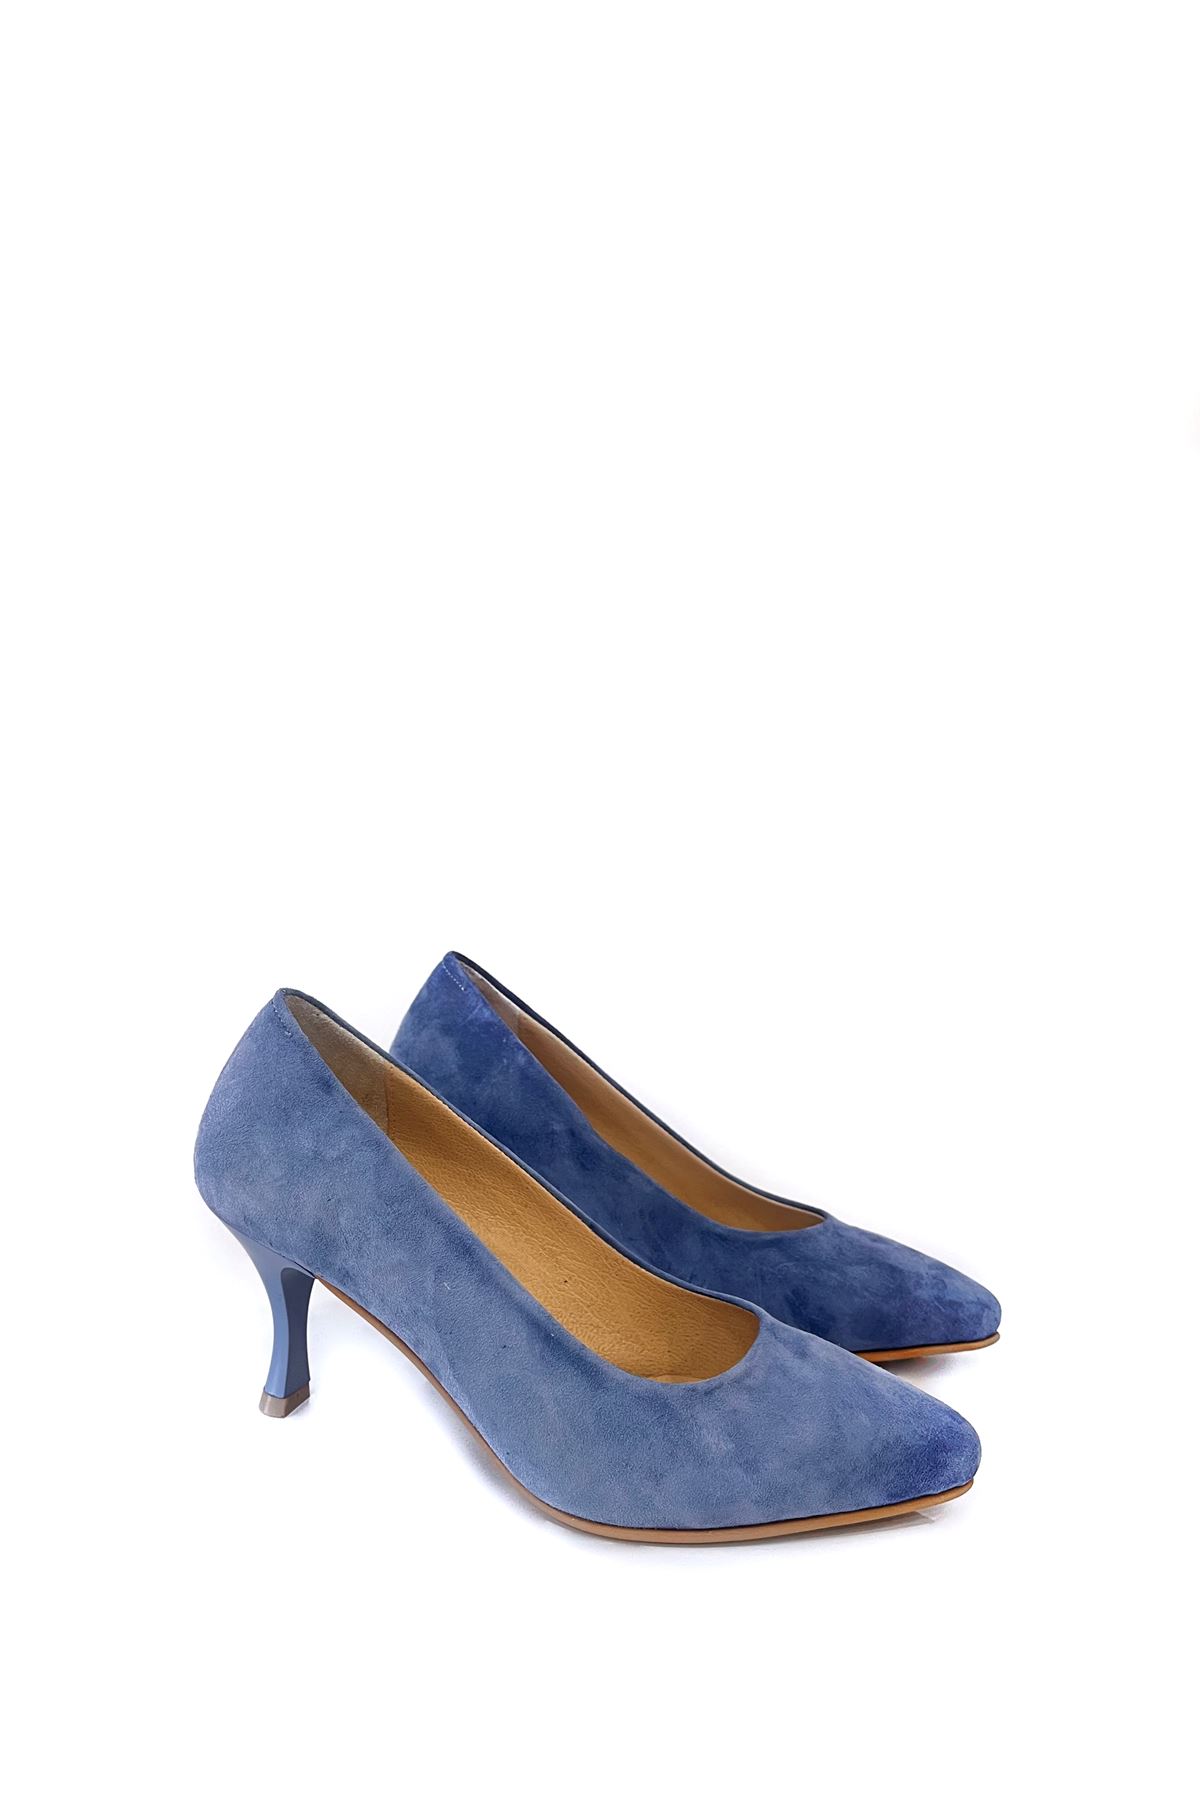 Gerçek Süet Kadın Topuklu Ayakkabı  Mavi  Cool  